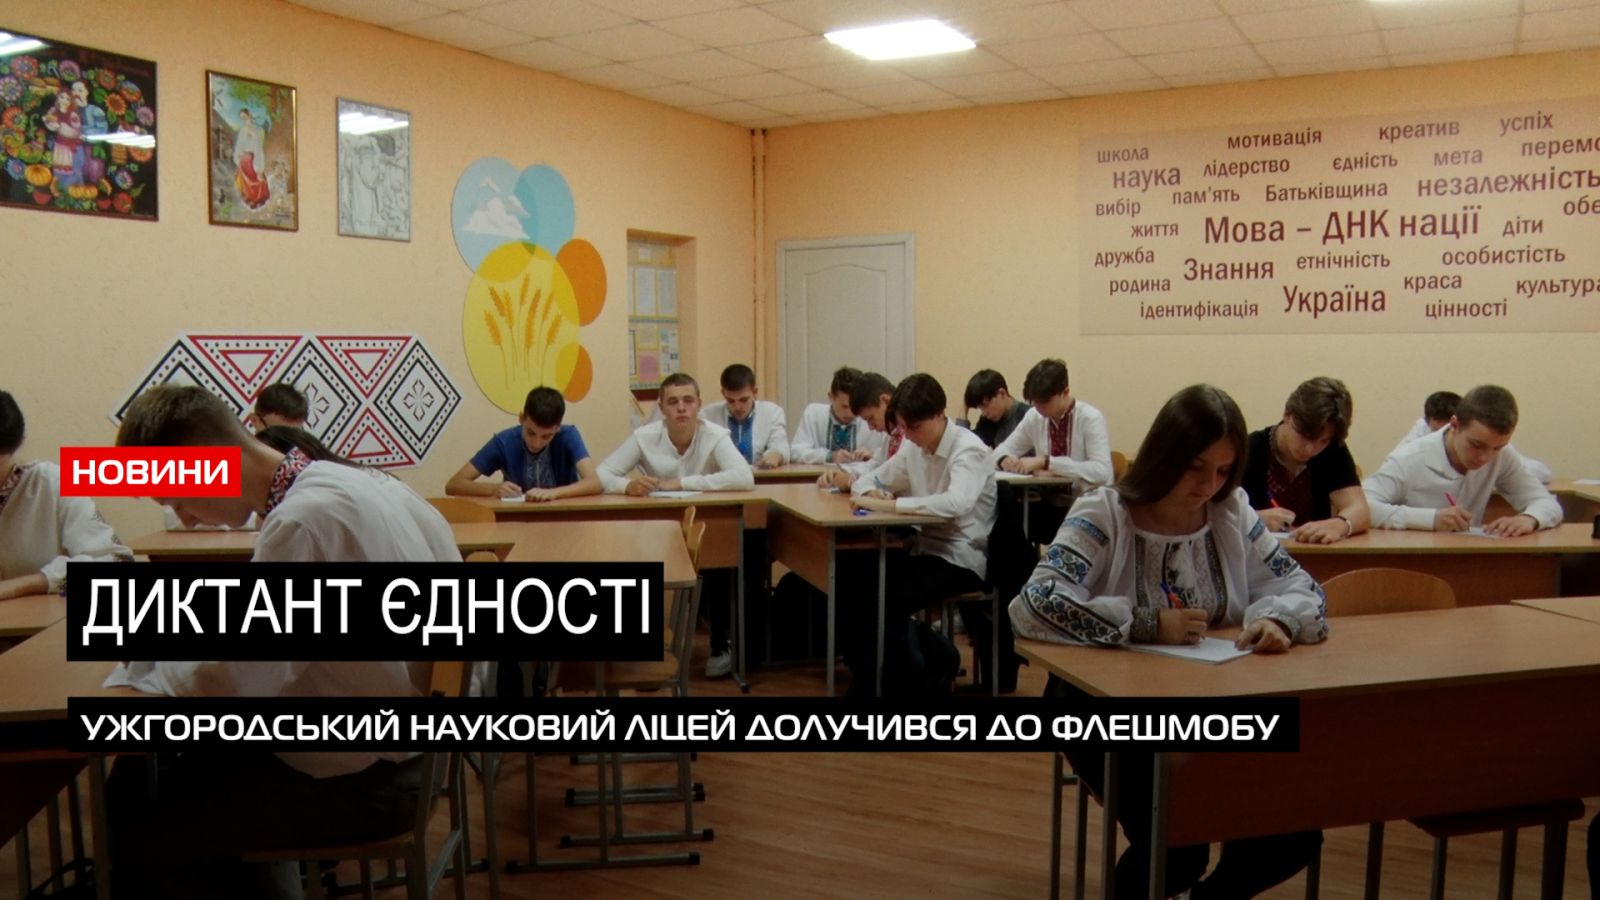  Національний радіодиктант: учні Ужгородського наукового ліцею писали про «Дороги України» (ВІДЕО) 0